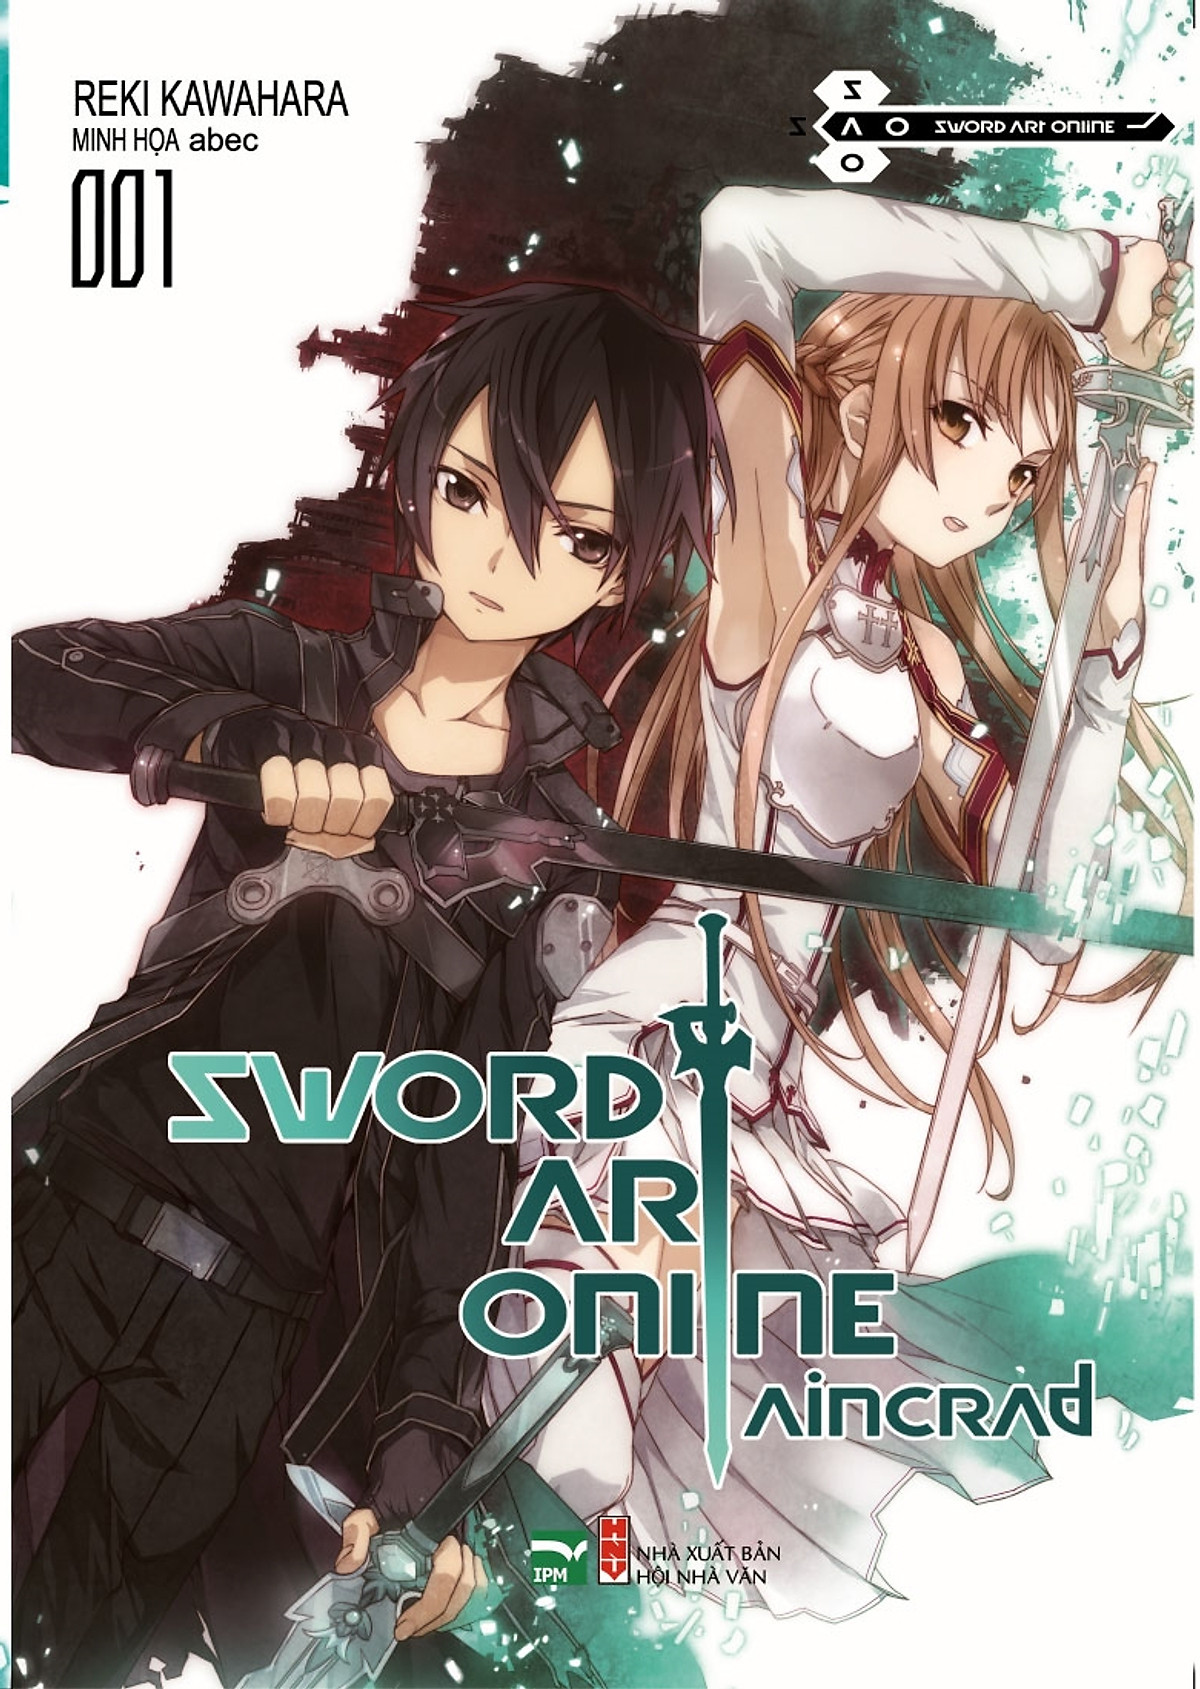 Sword Art Online 001 - Aincrad